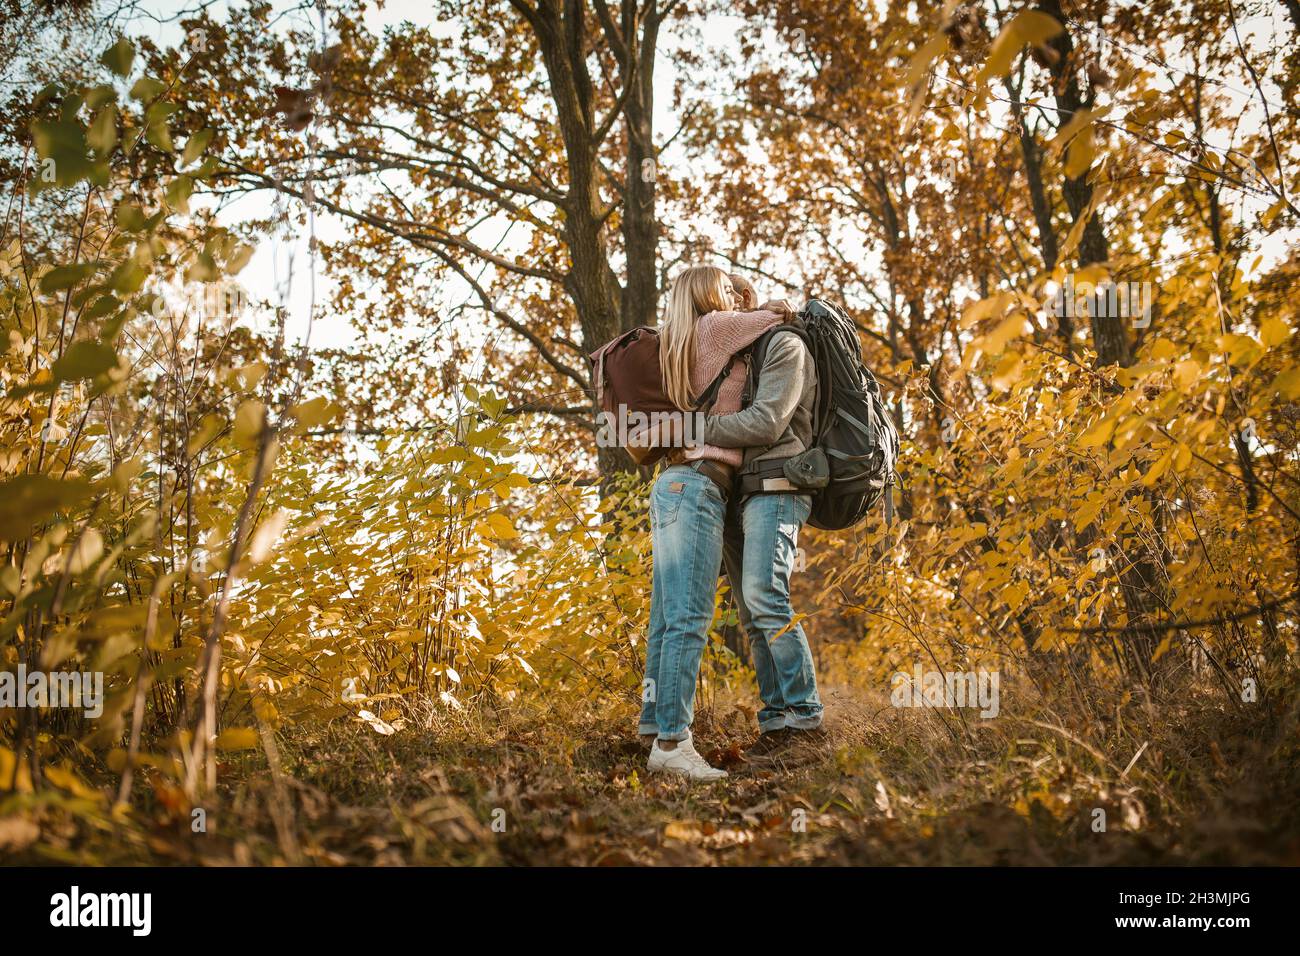 Un couple de voyageurs épris s'embrasse en admirant la nature de l'automne.Les jeunes s'embrassent dans une nature automnale multicolore.Tir fro Banque D'Images